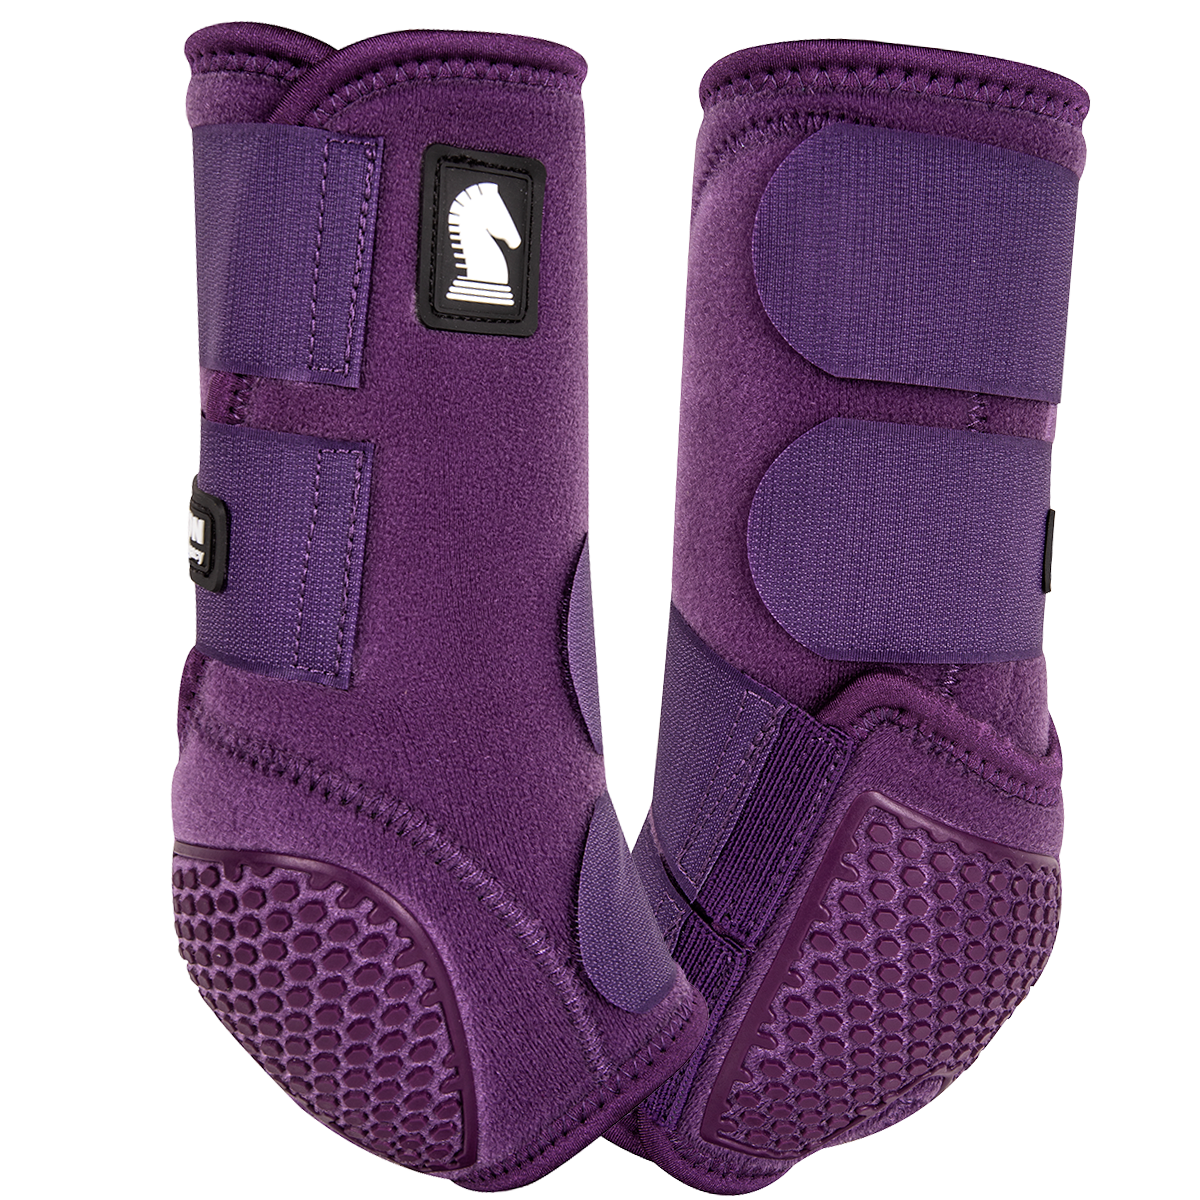 Eggplant Flexion  Legacy Splint Boots